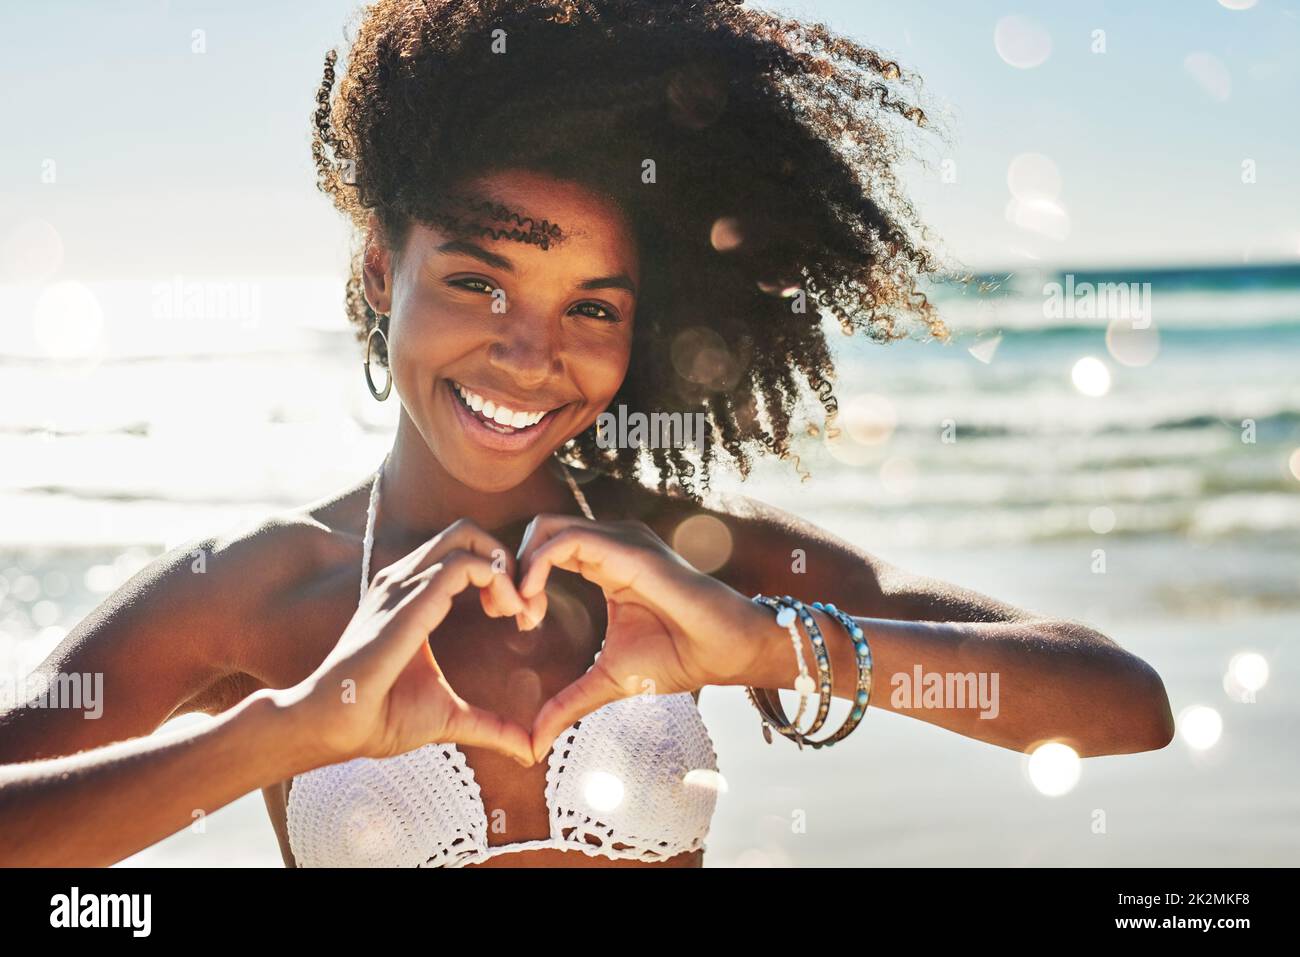 Mein Herz gehört zum Sommer. Porträt einer schönen jungen Frau, die mit ihren Händen am Strand eine herzförmige Geste macht. Stockfoto